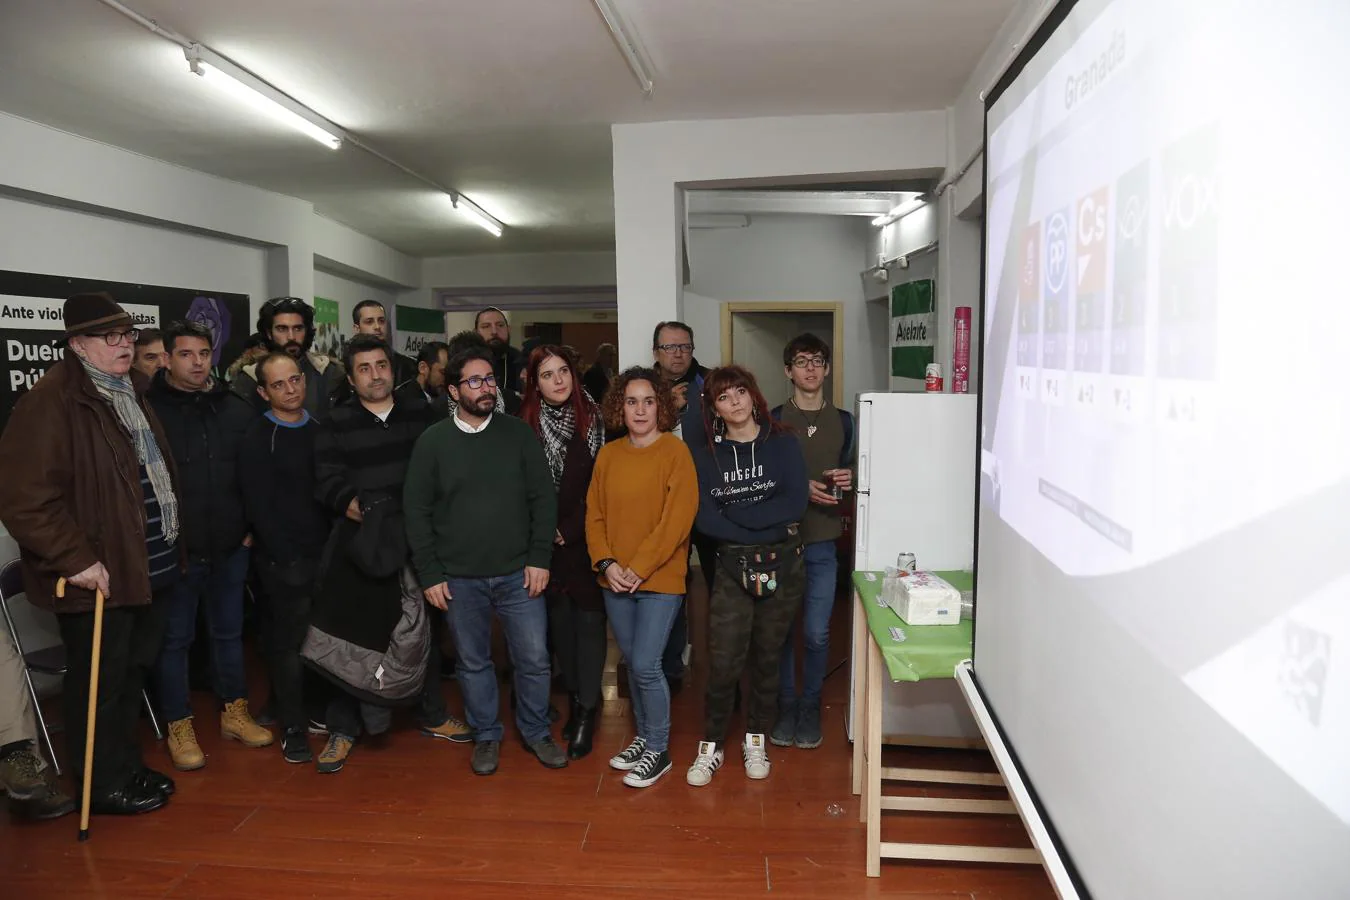 La jornada electoral de Adelante Andalucía, en imágenes